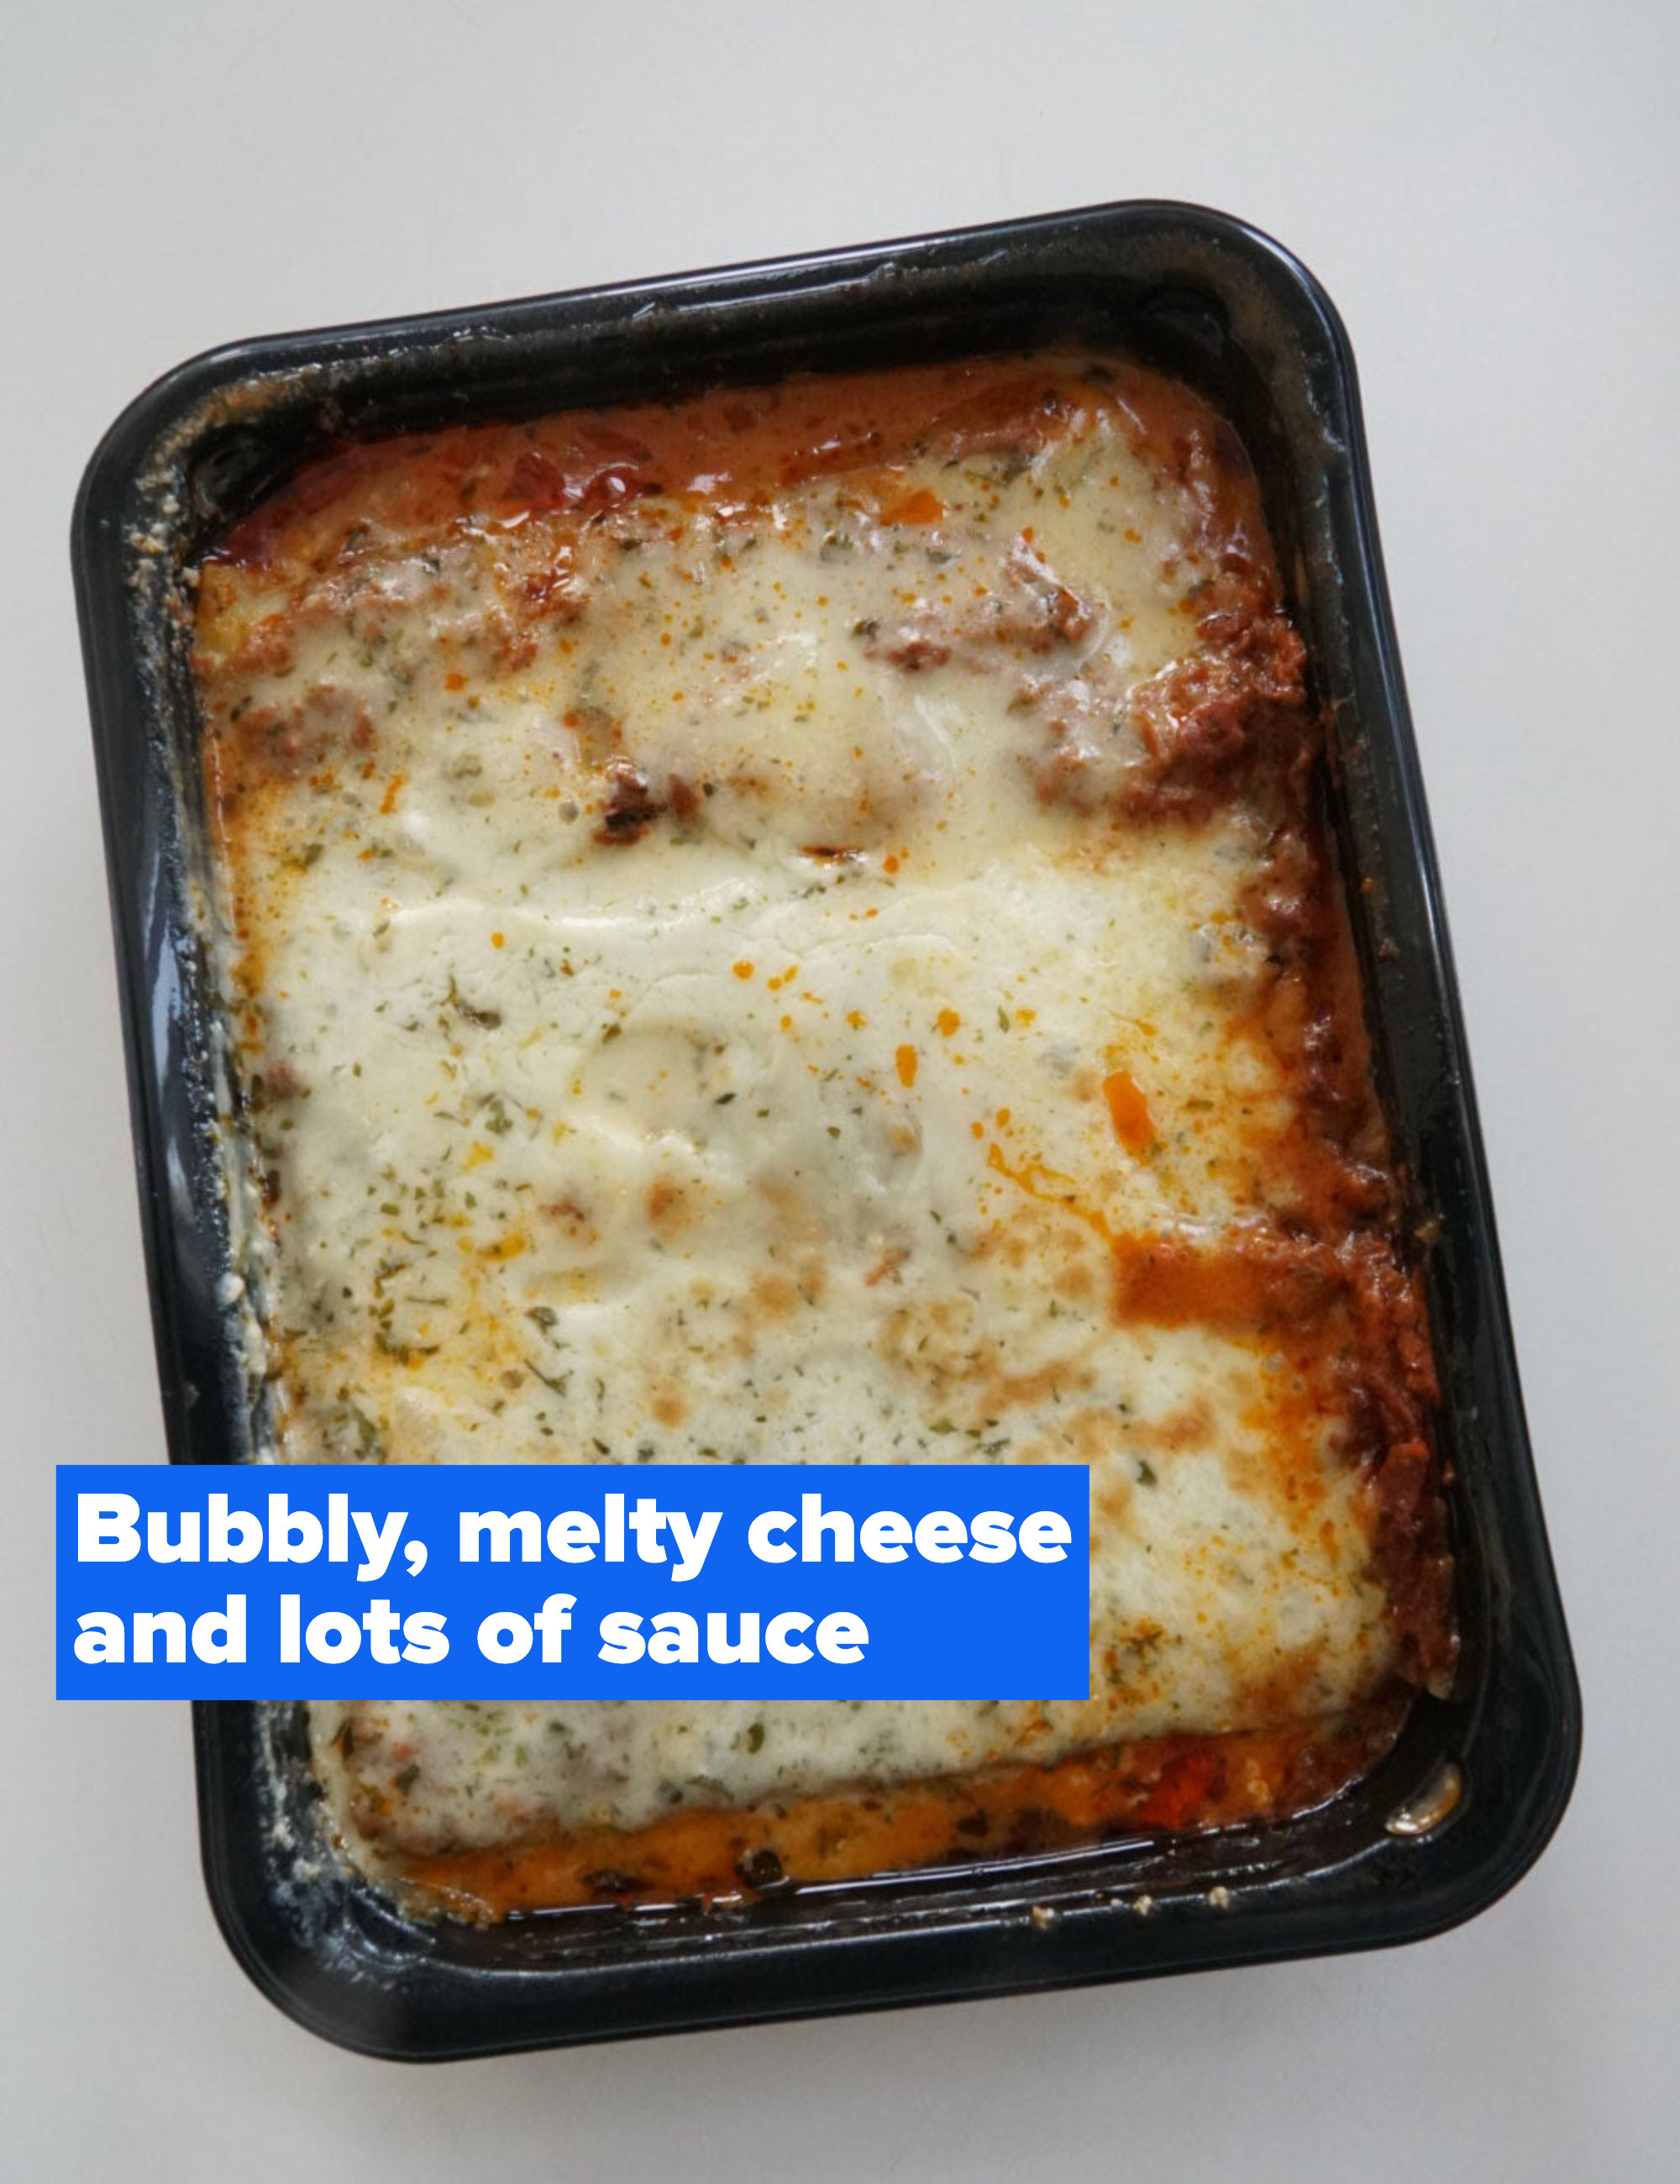 A tray of cheesy lasagna